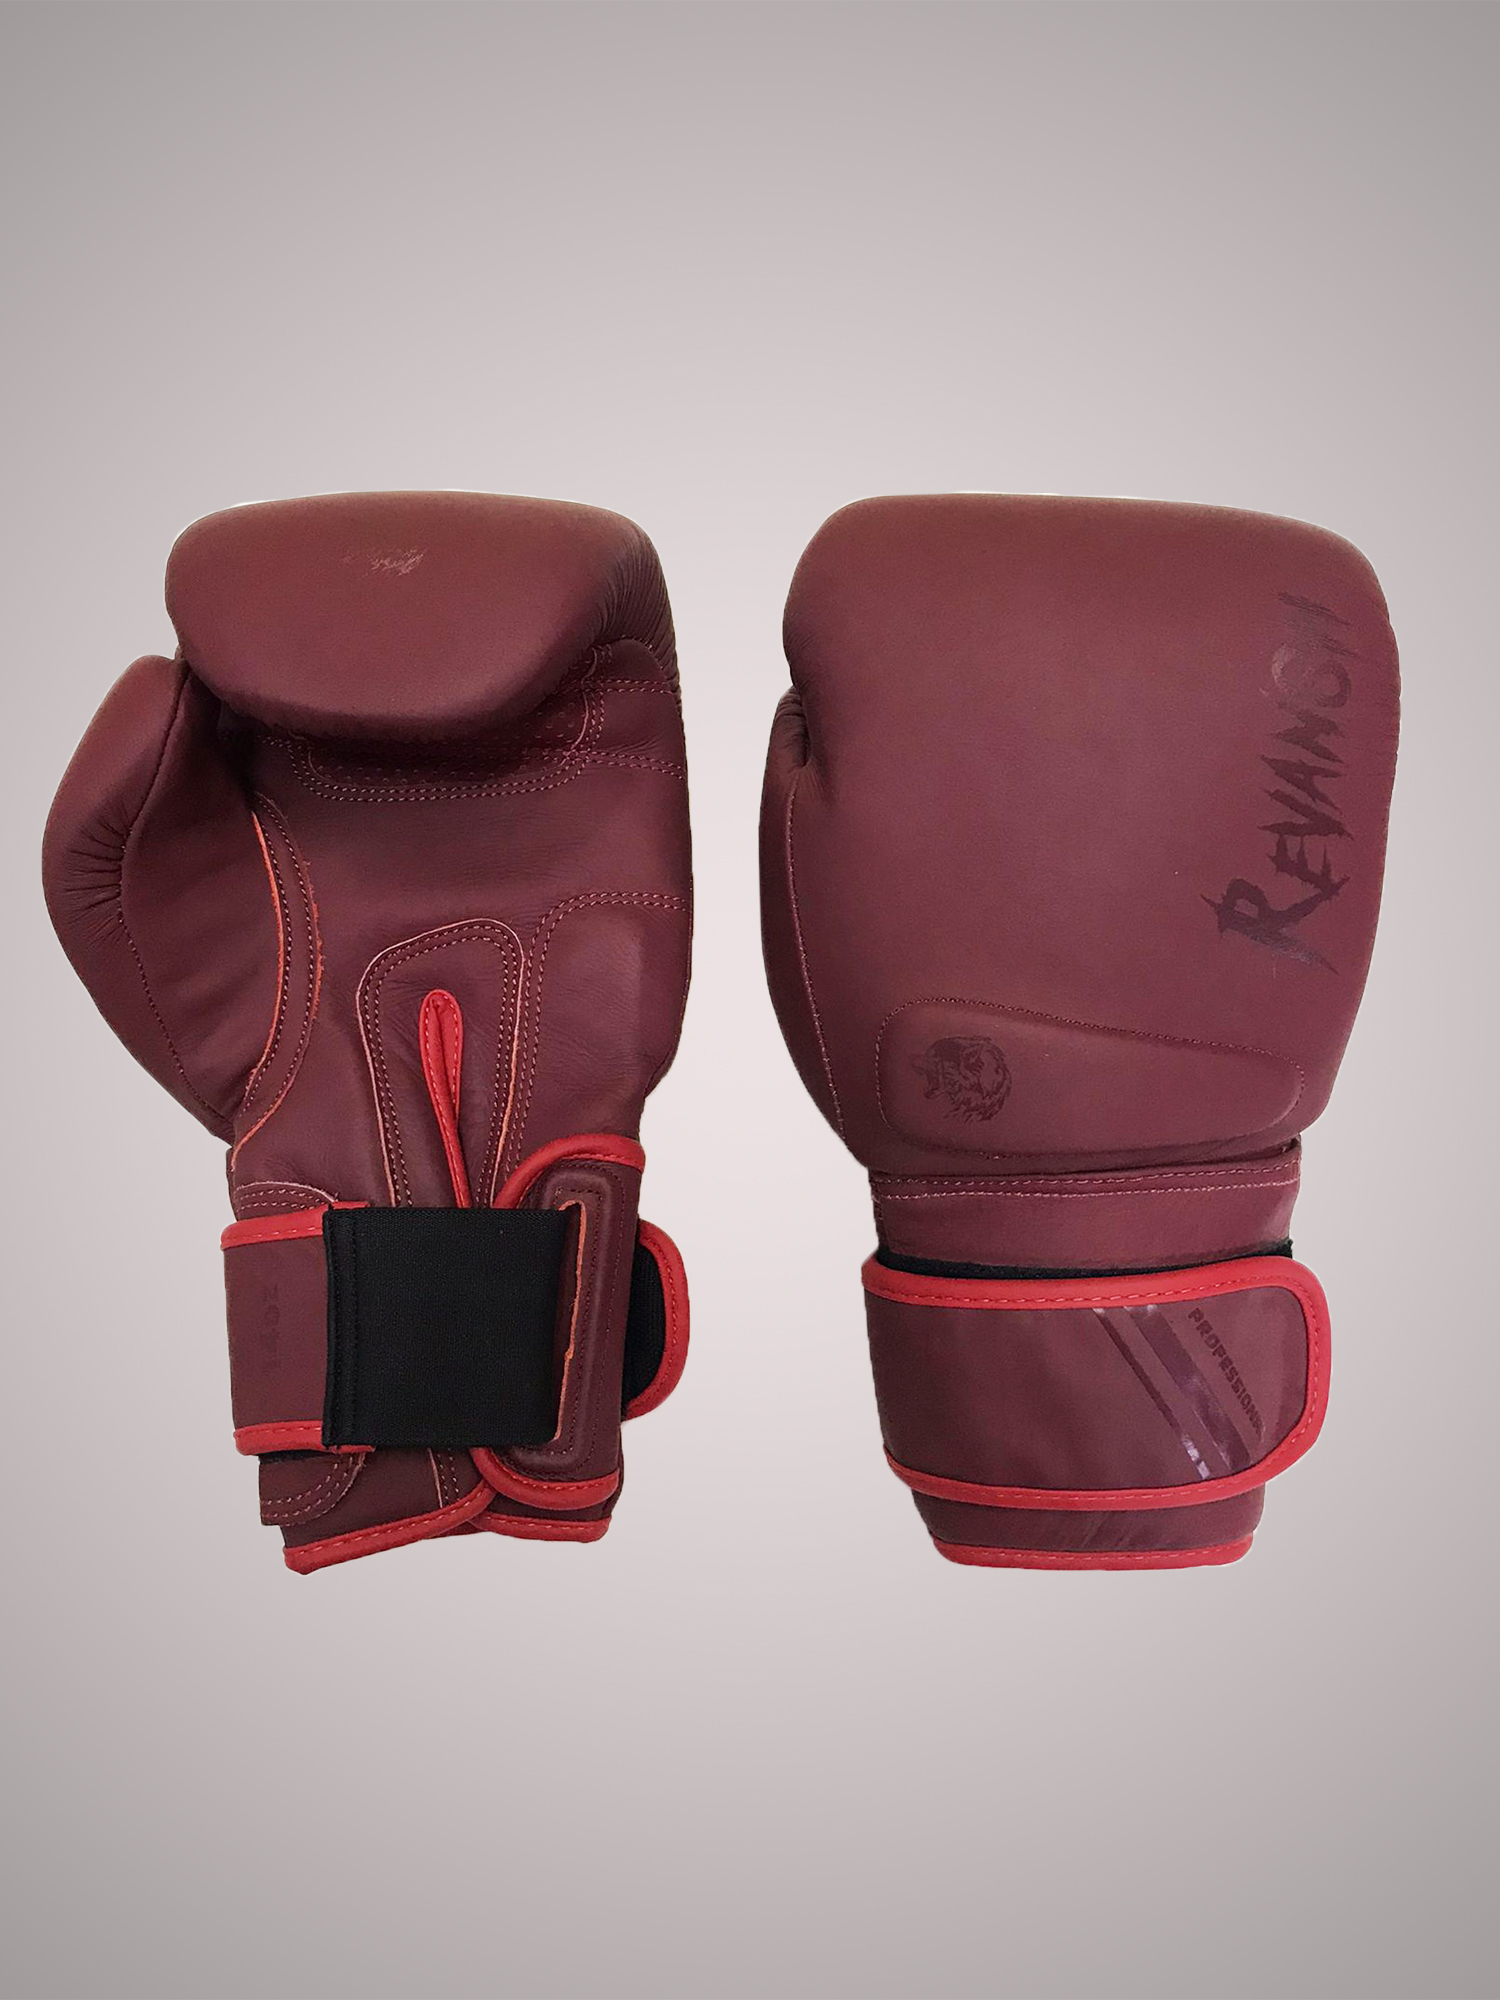 Боксерские Перчатки REVANSH PRO MATE BORDO 12 унций из натуральной кожи